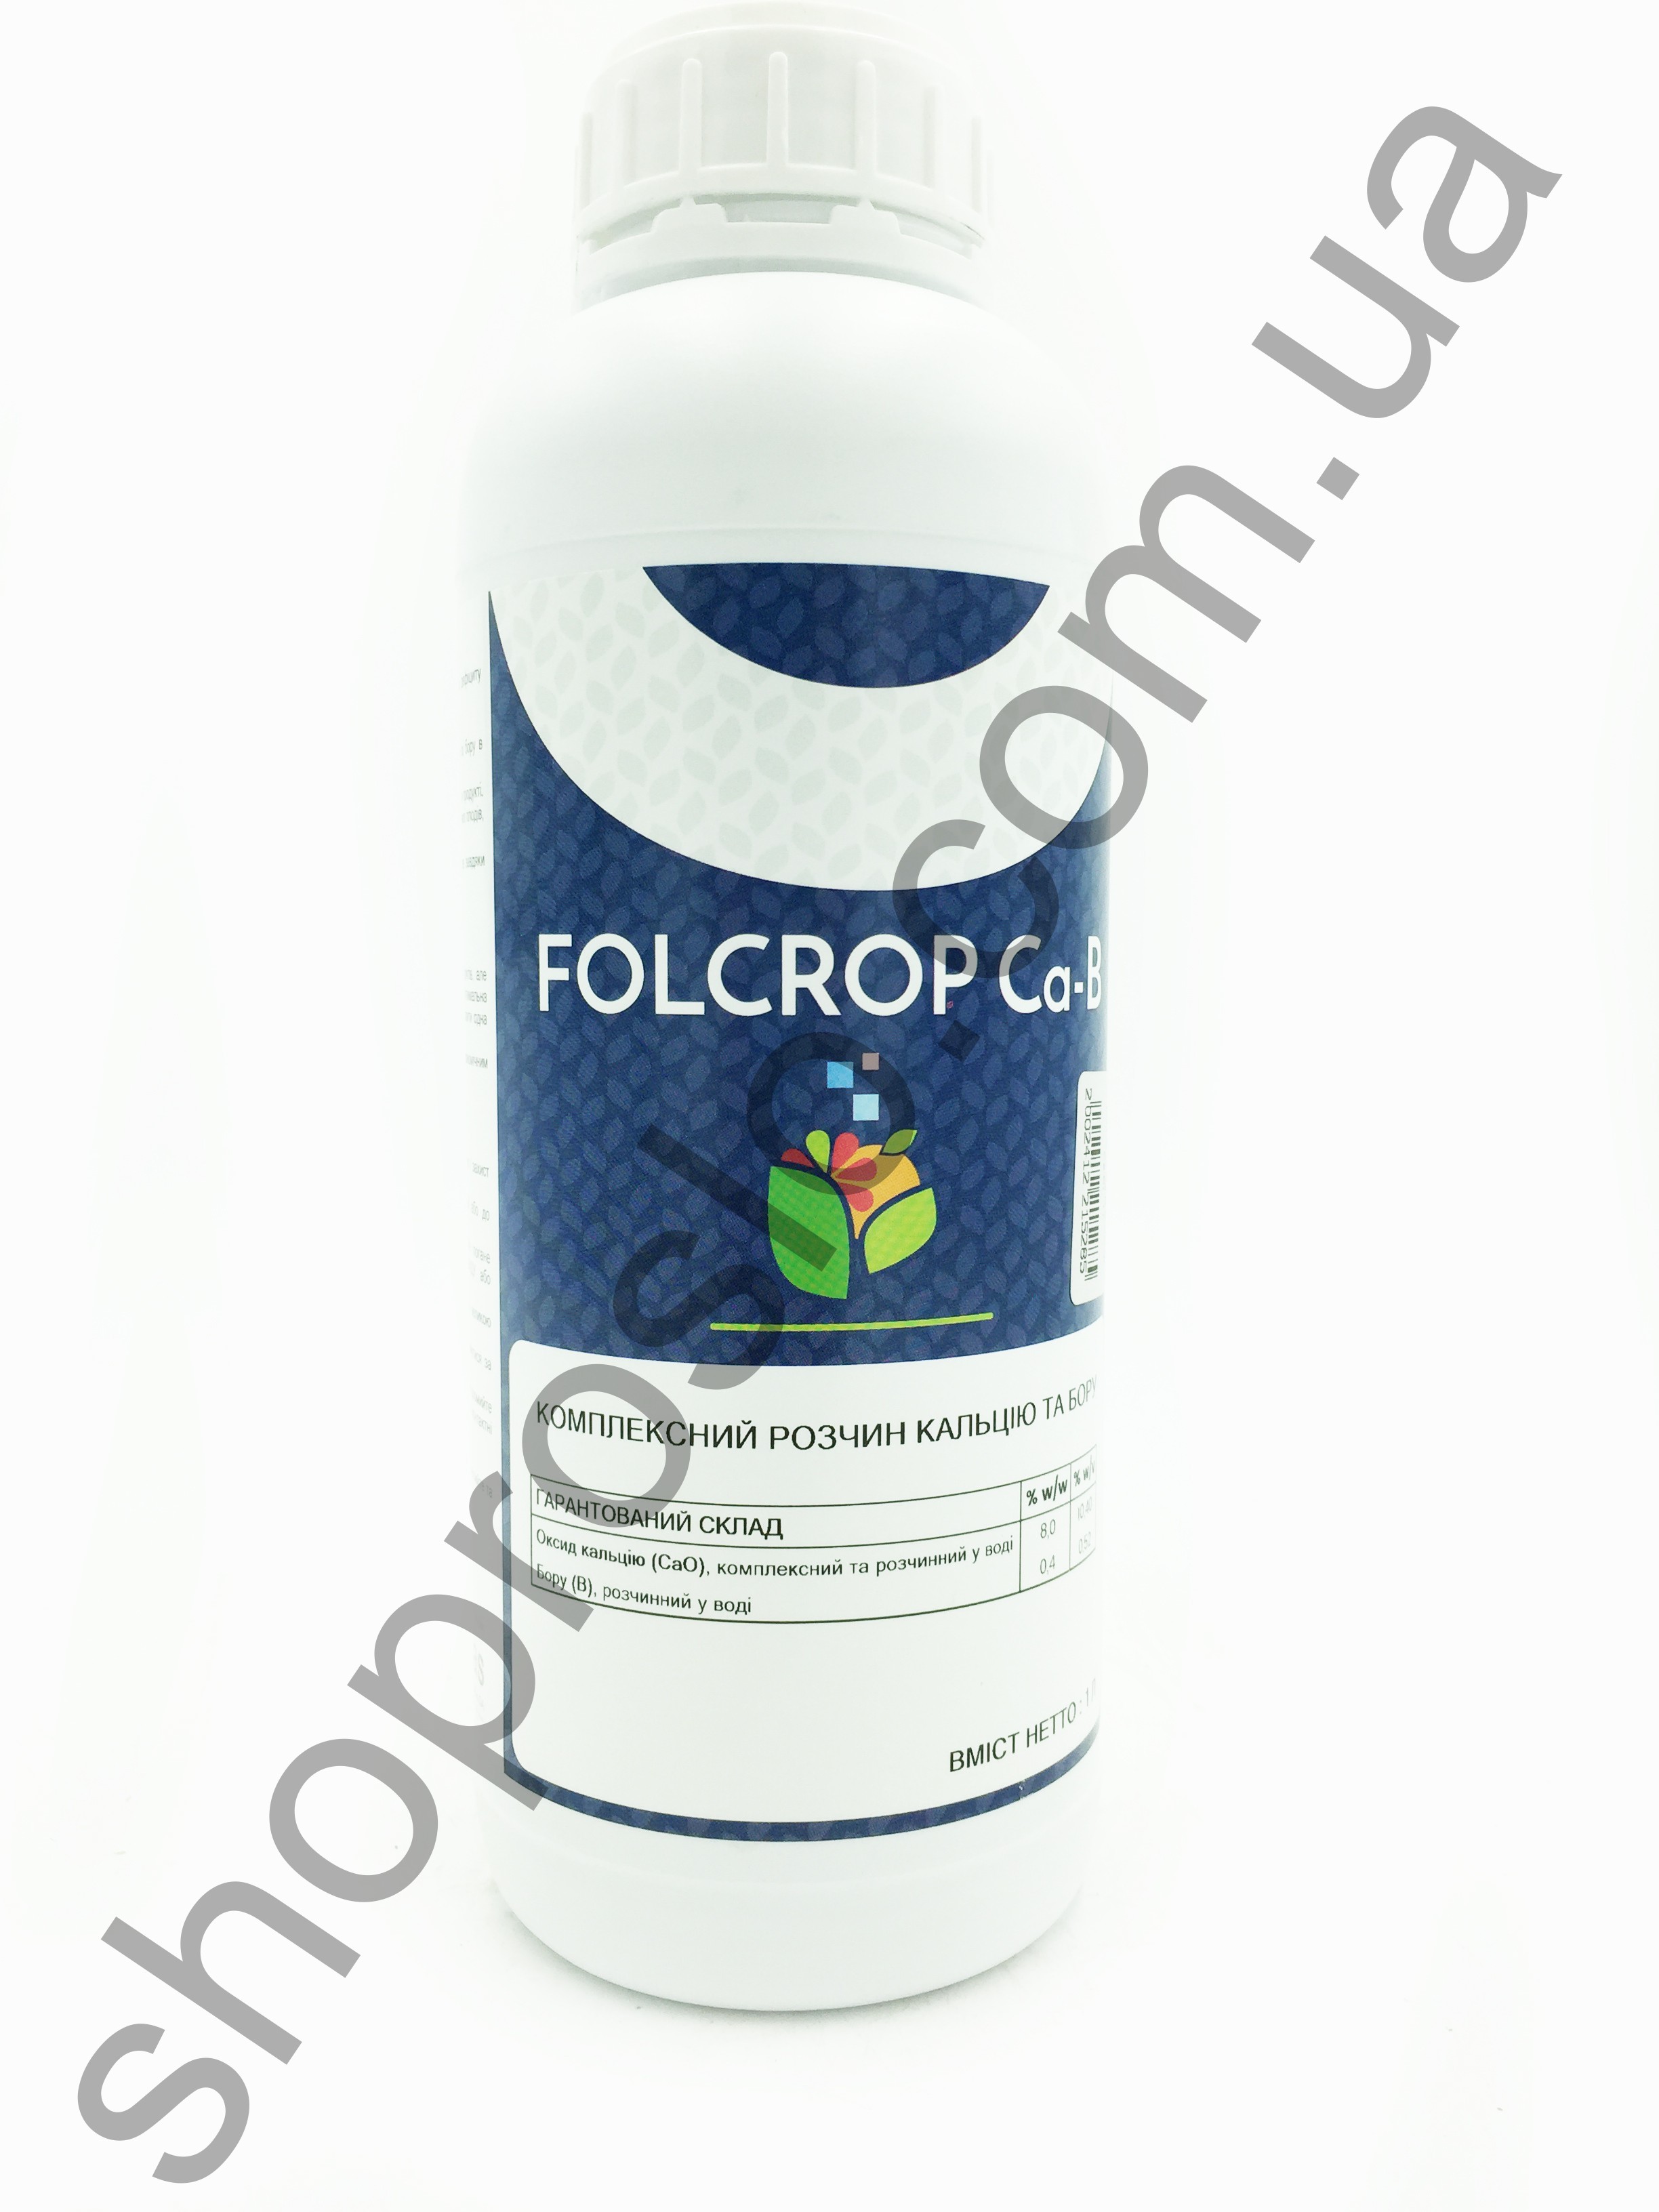 Фолькроп Ca-B (Folcrop Ca-B) , комплексное удобрение, "ForCrop" (Испания), 1 л